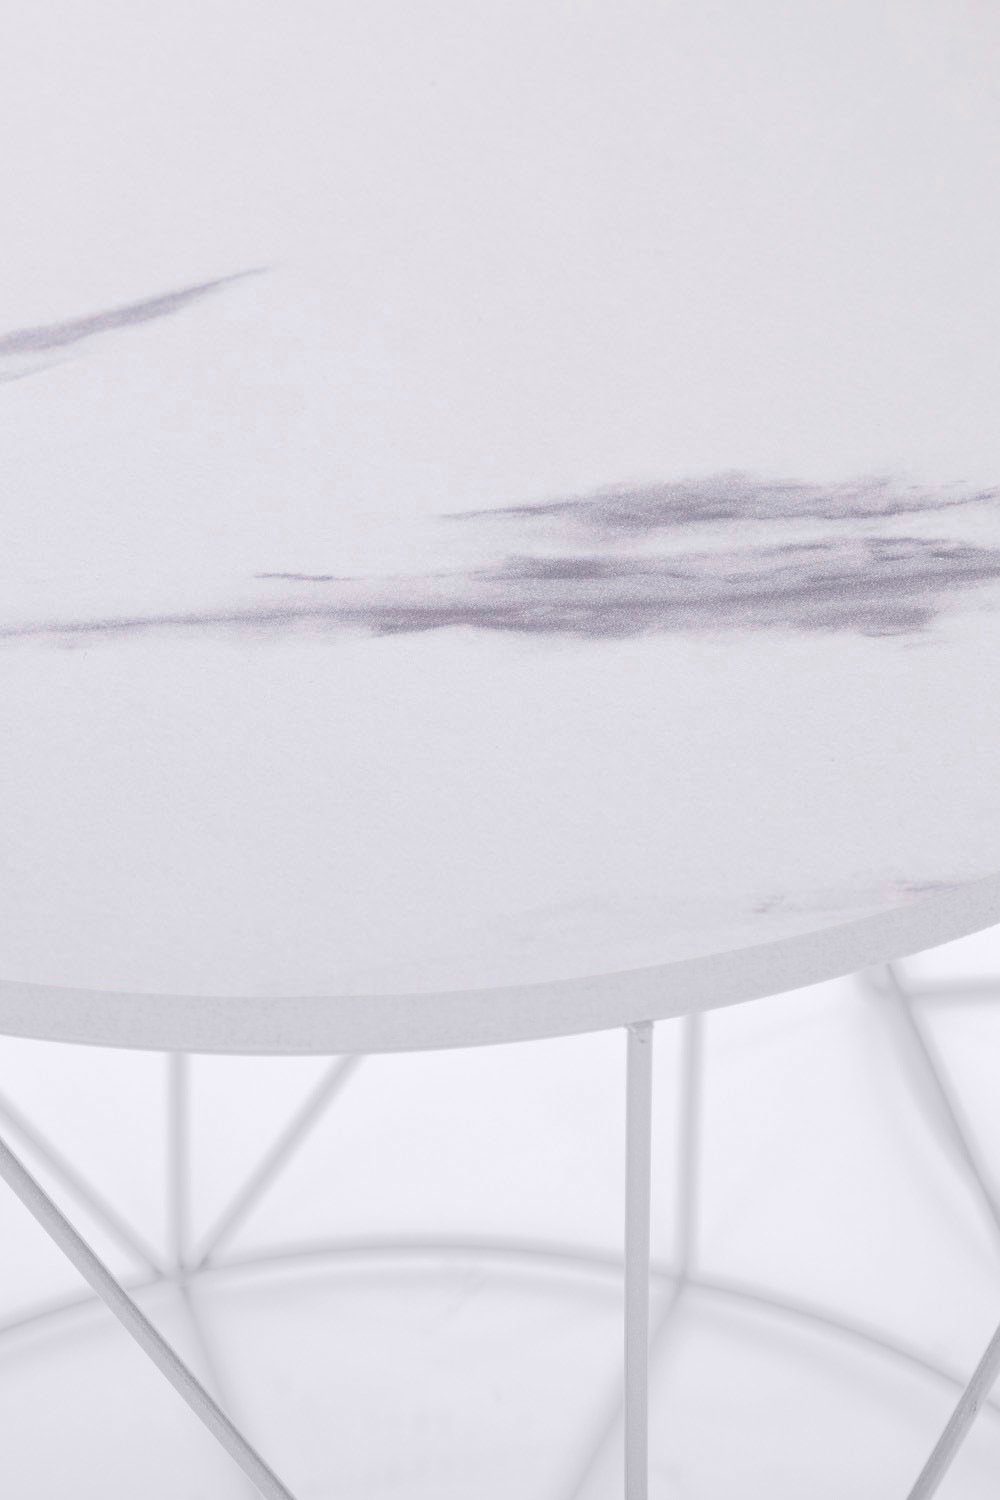 Platte Skandinavischem Design Rundini, Weiß Weiß/Marmor Weiß Gestell, | lackiertem im Flair Beistelltisch Design my Naturbelassene |